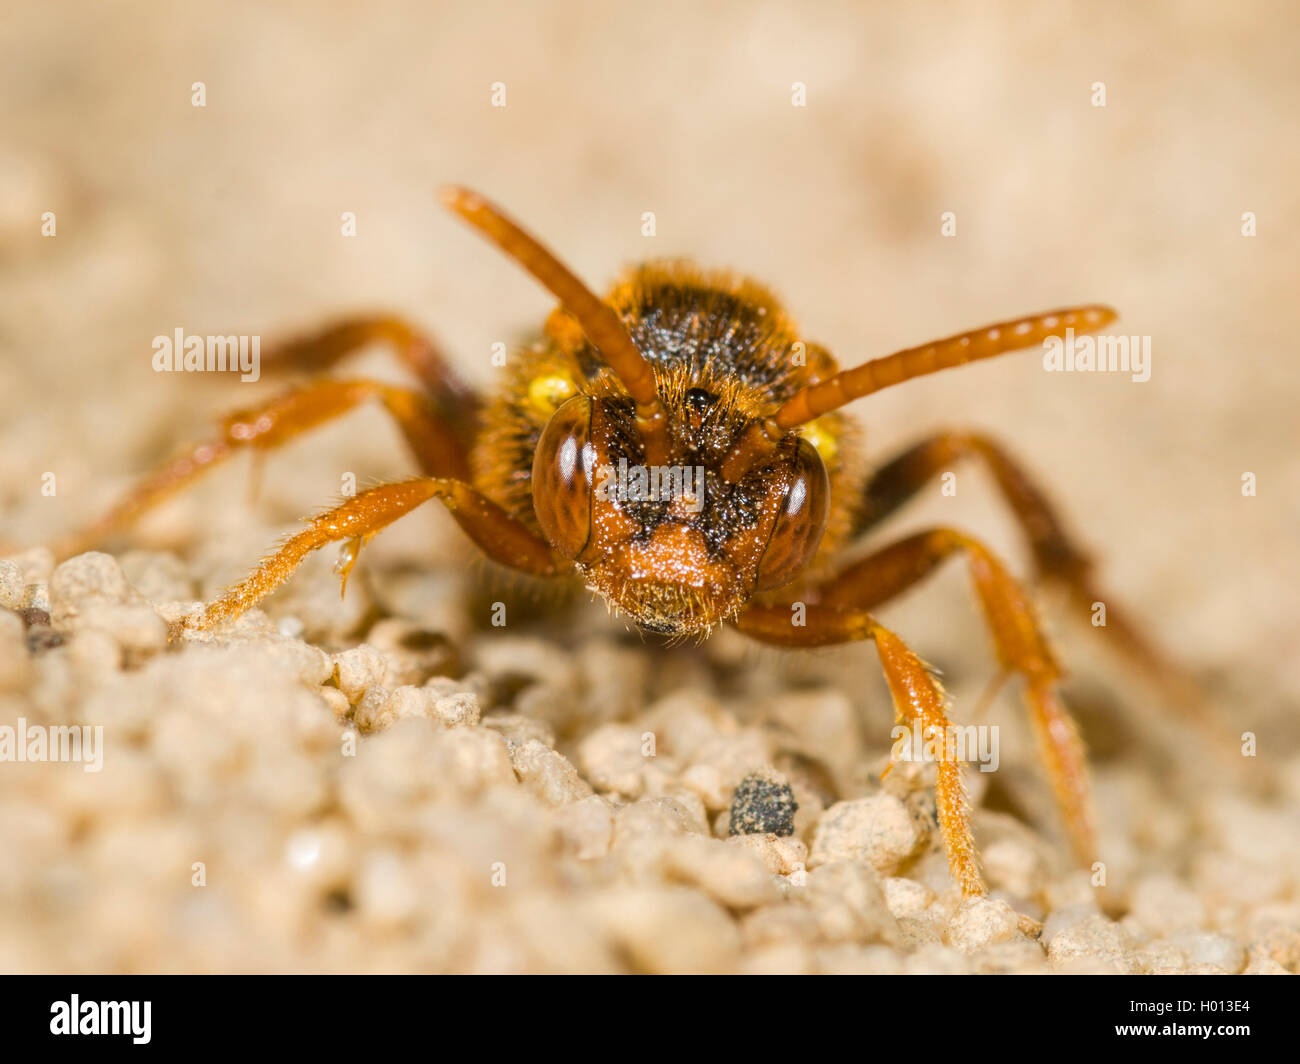 Lathbury's Nomad Bee (Nomada lathburiana), Female on sand, Germany Stock Photo